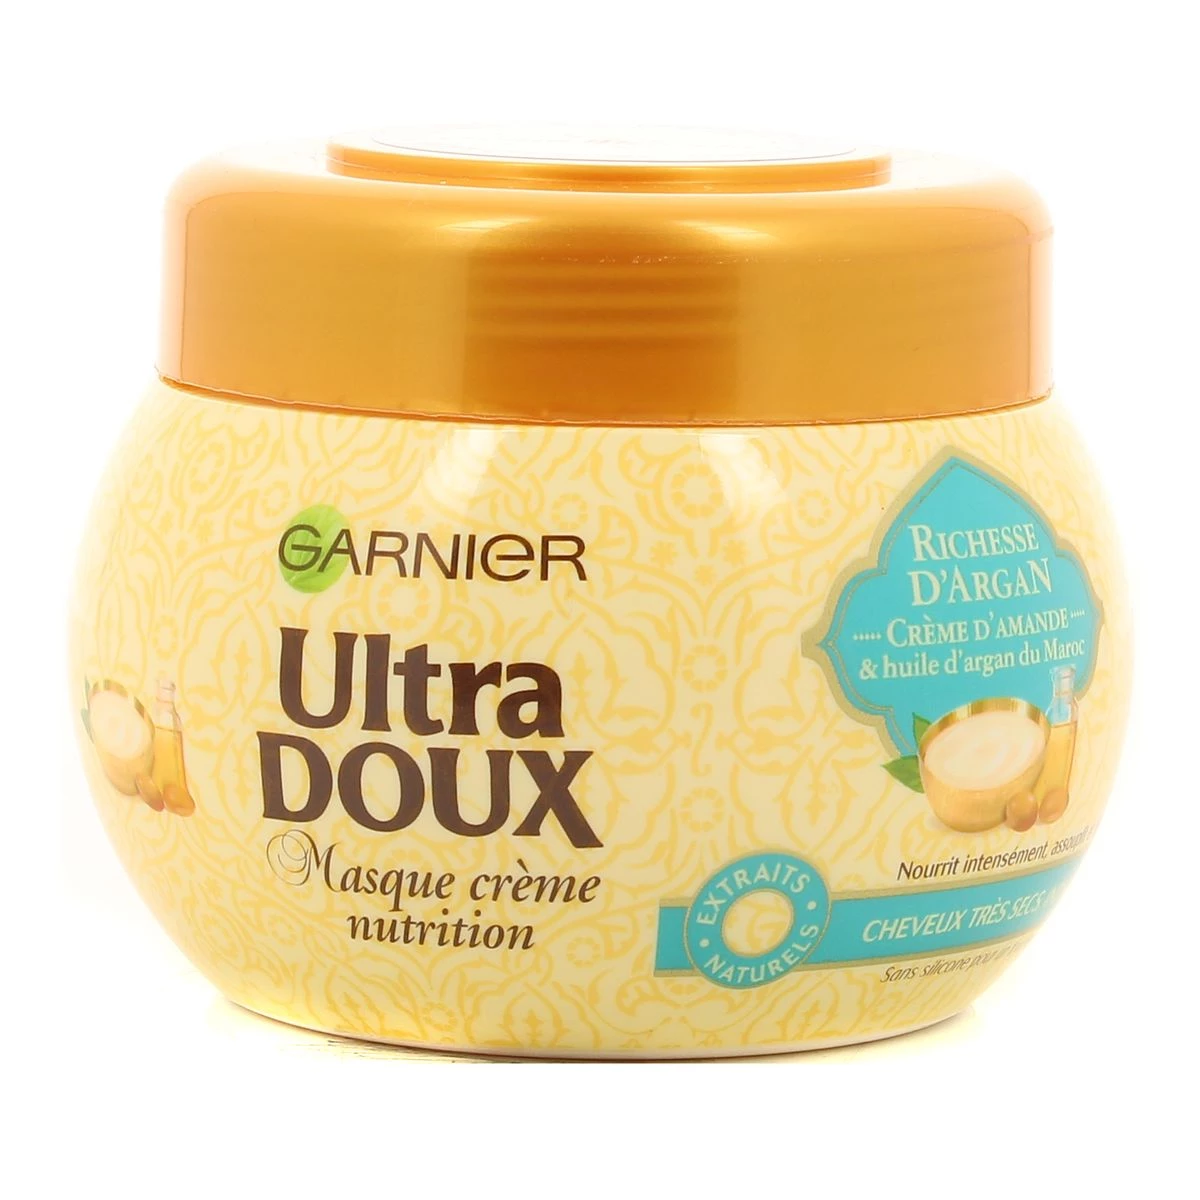 Masque crème nutrition ultra doux 300ml - GARNIER